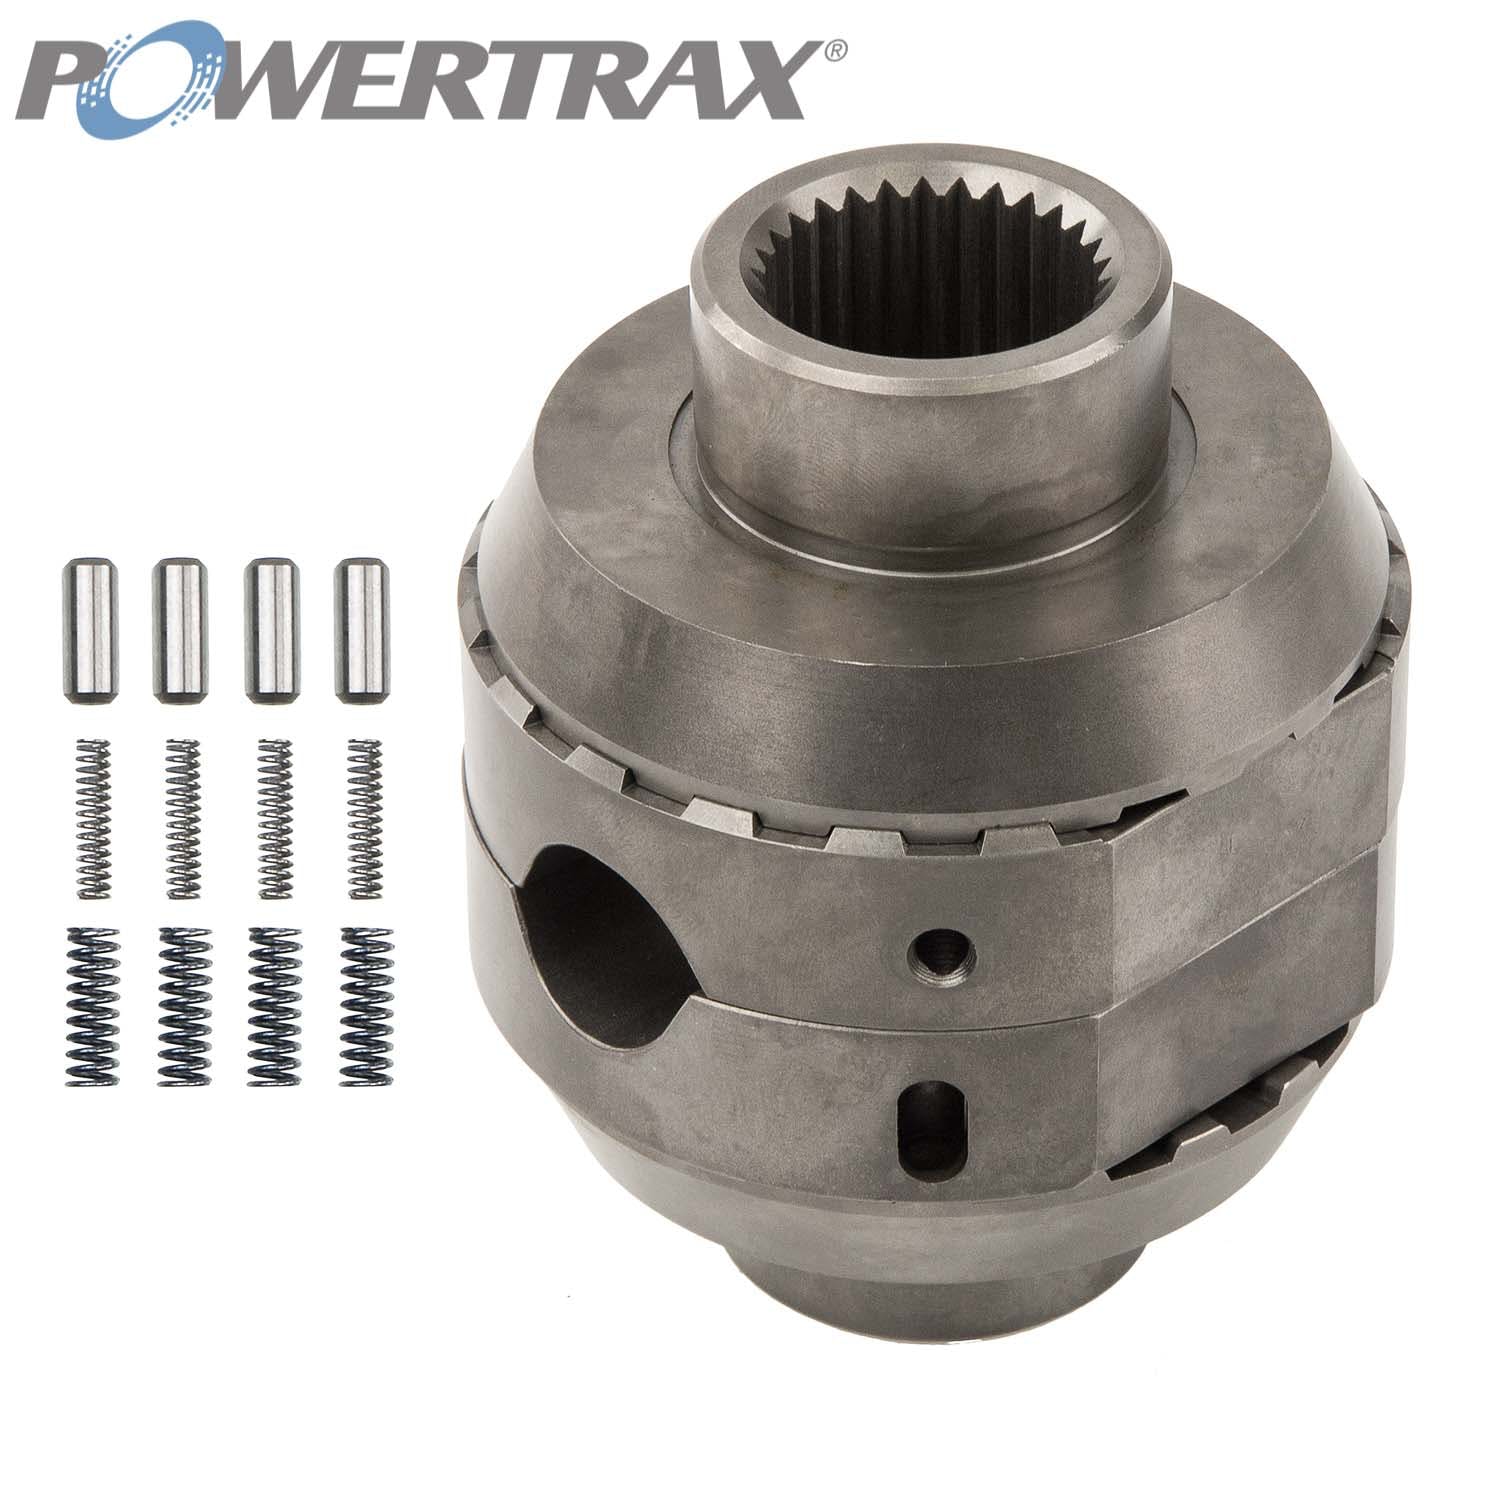 PowerTrax 1250-LR Lock Right Locker